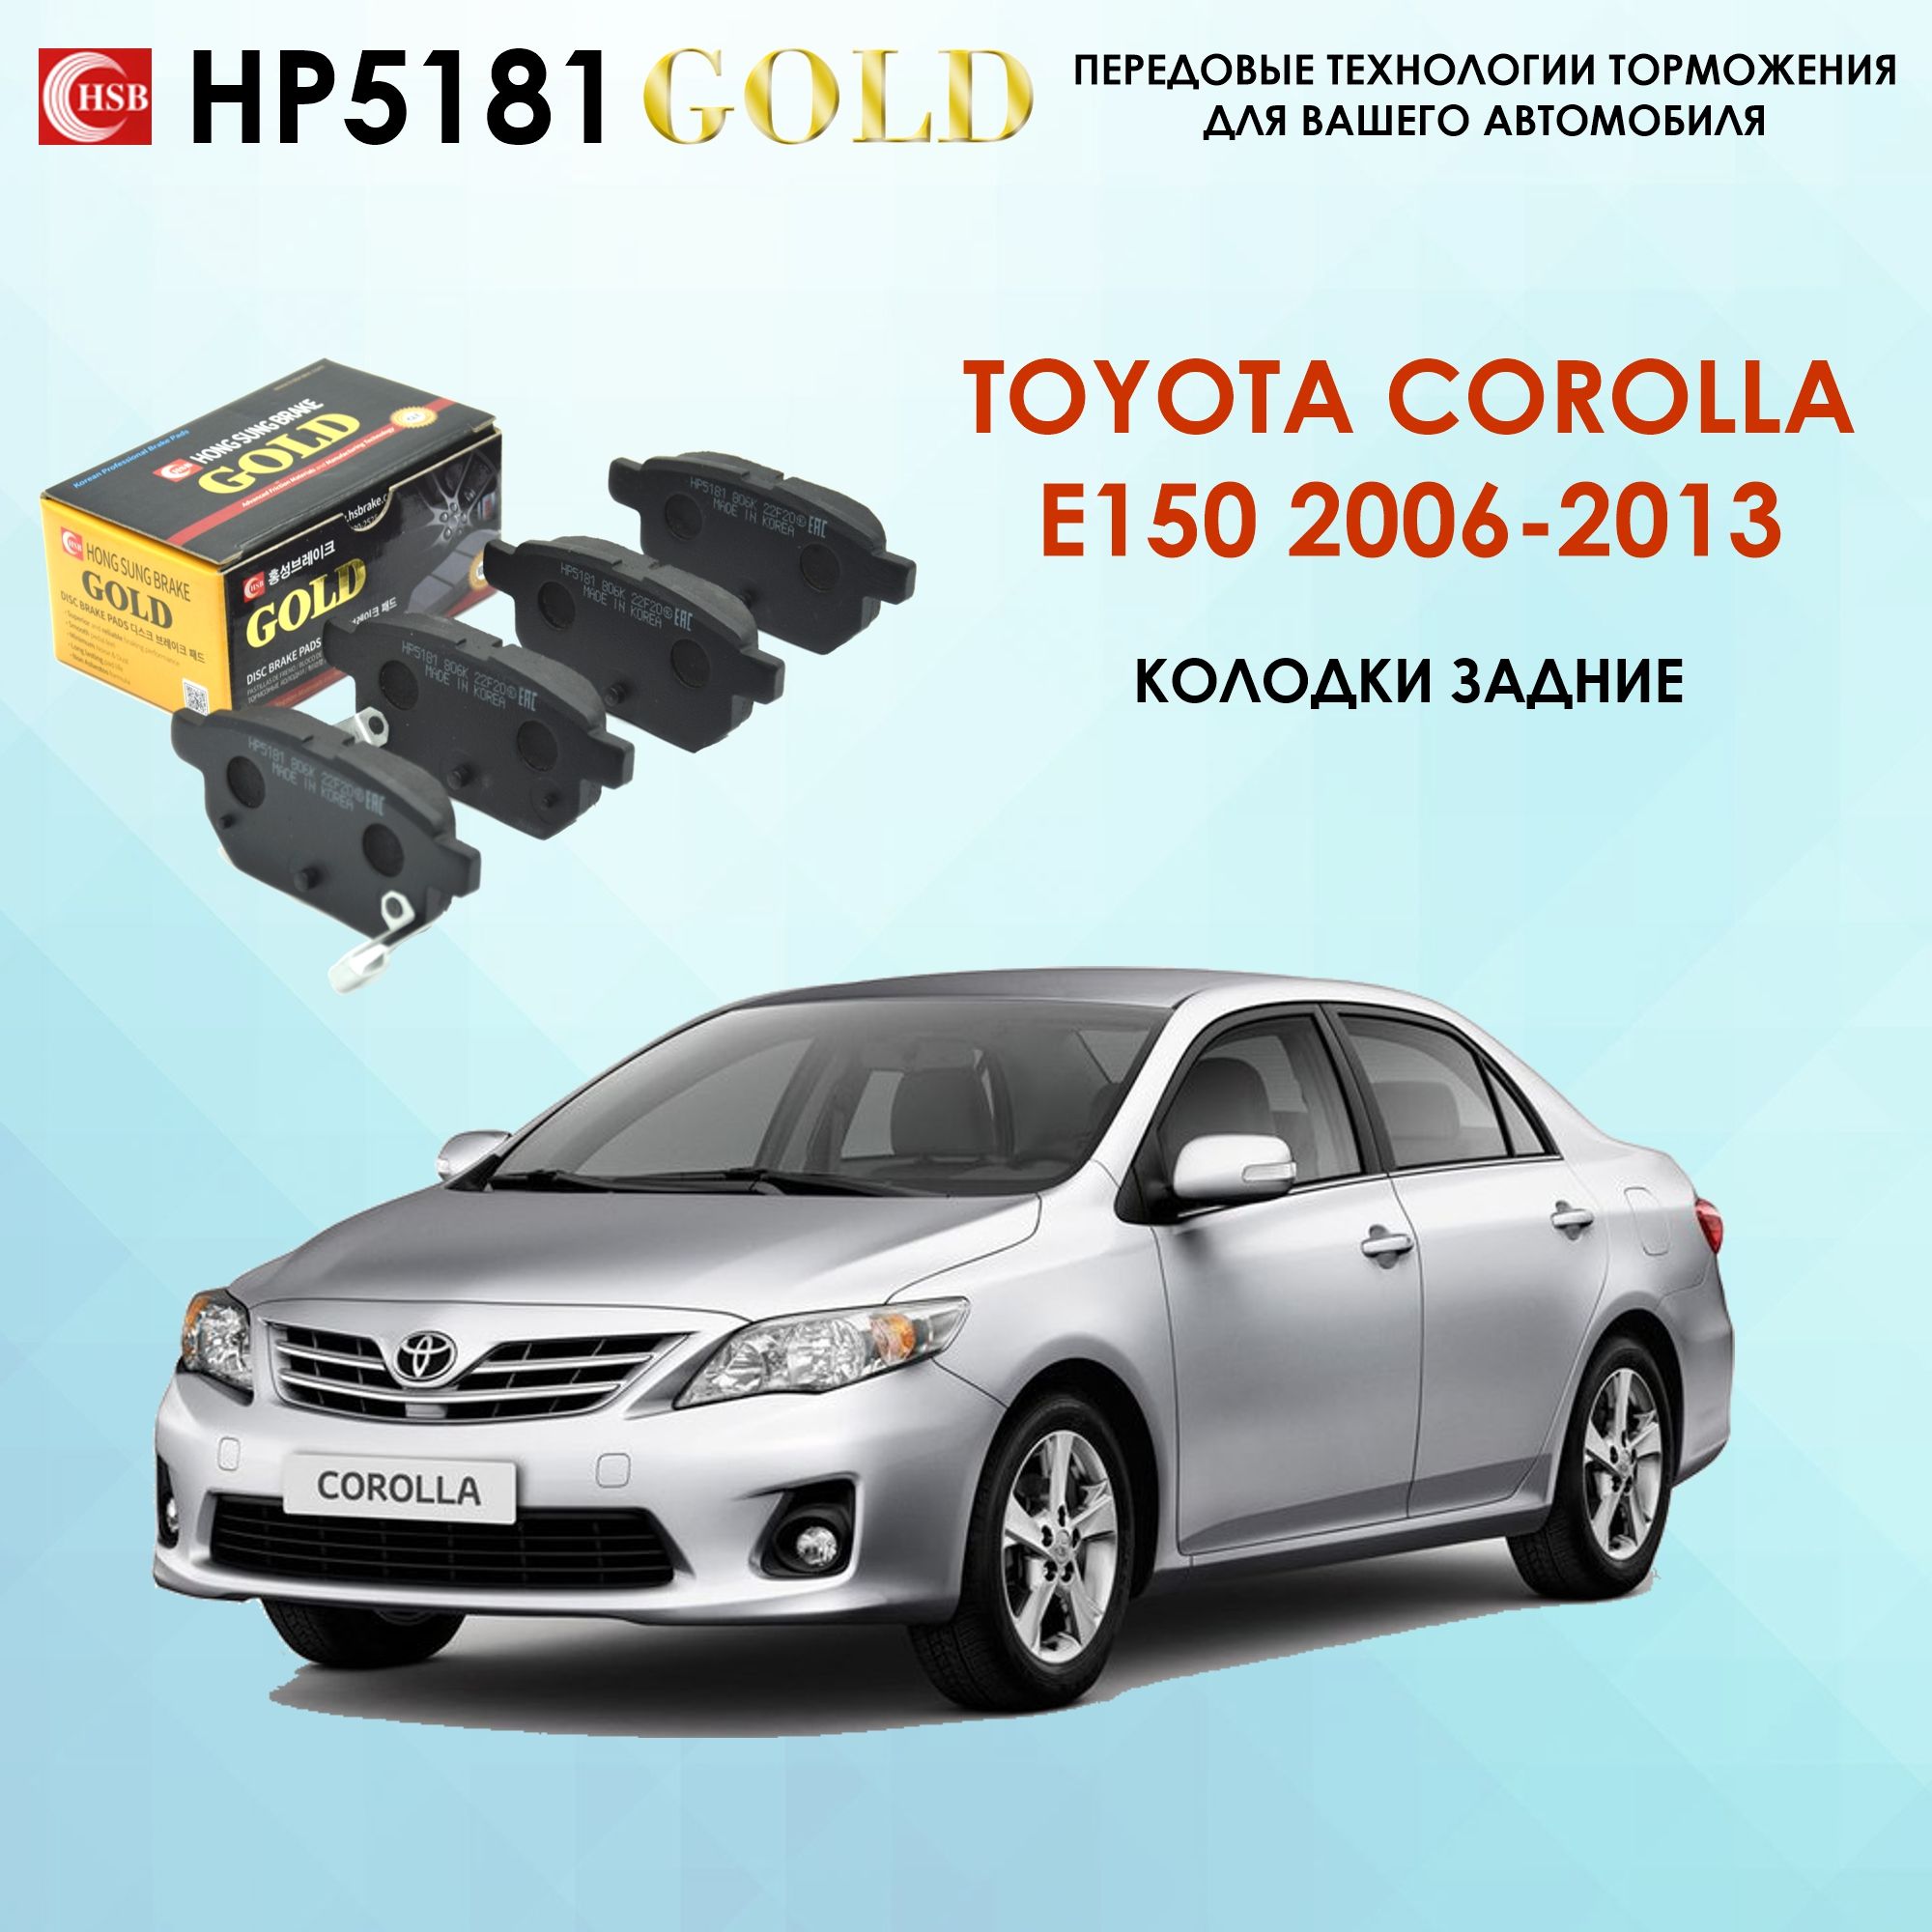 Техническое обслуживание Toyota Corolla (ТО Тойота Королла)